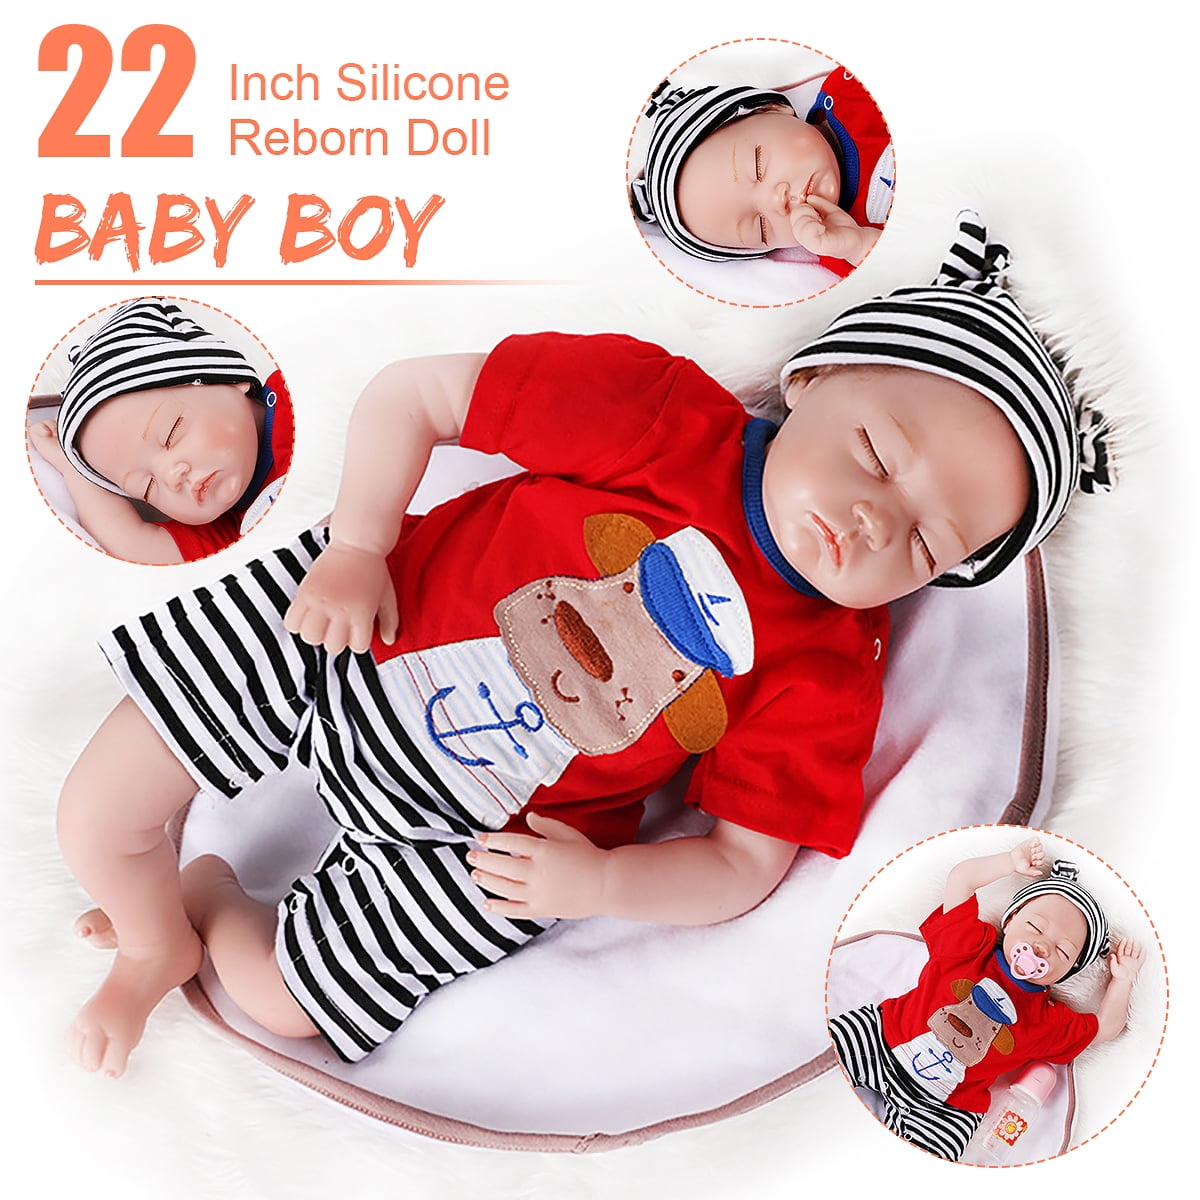 22" Realistic Reborn Baby Sleeping Boy Doll Lifelike Vinyl Silicone Newborn Xmas 